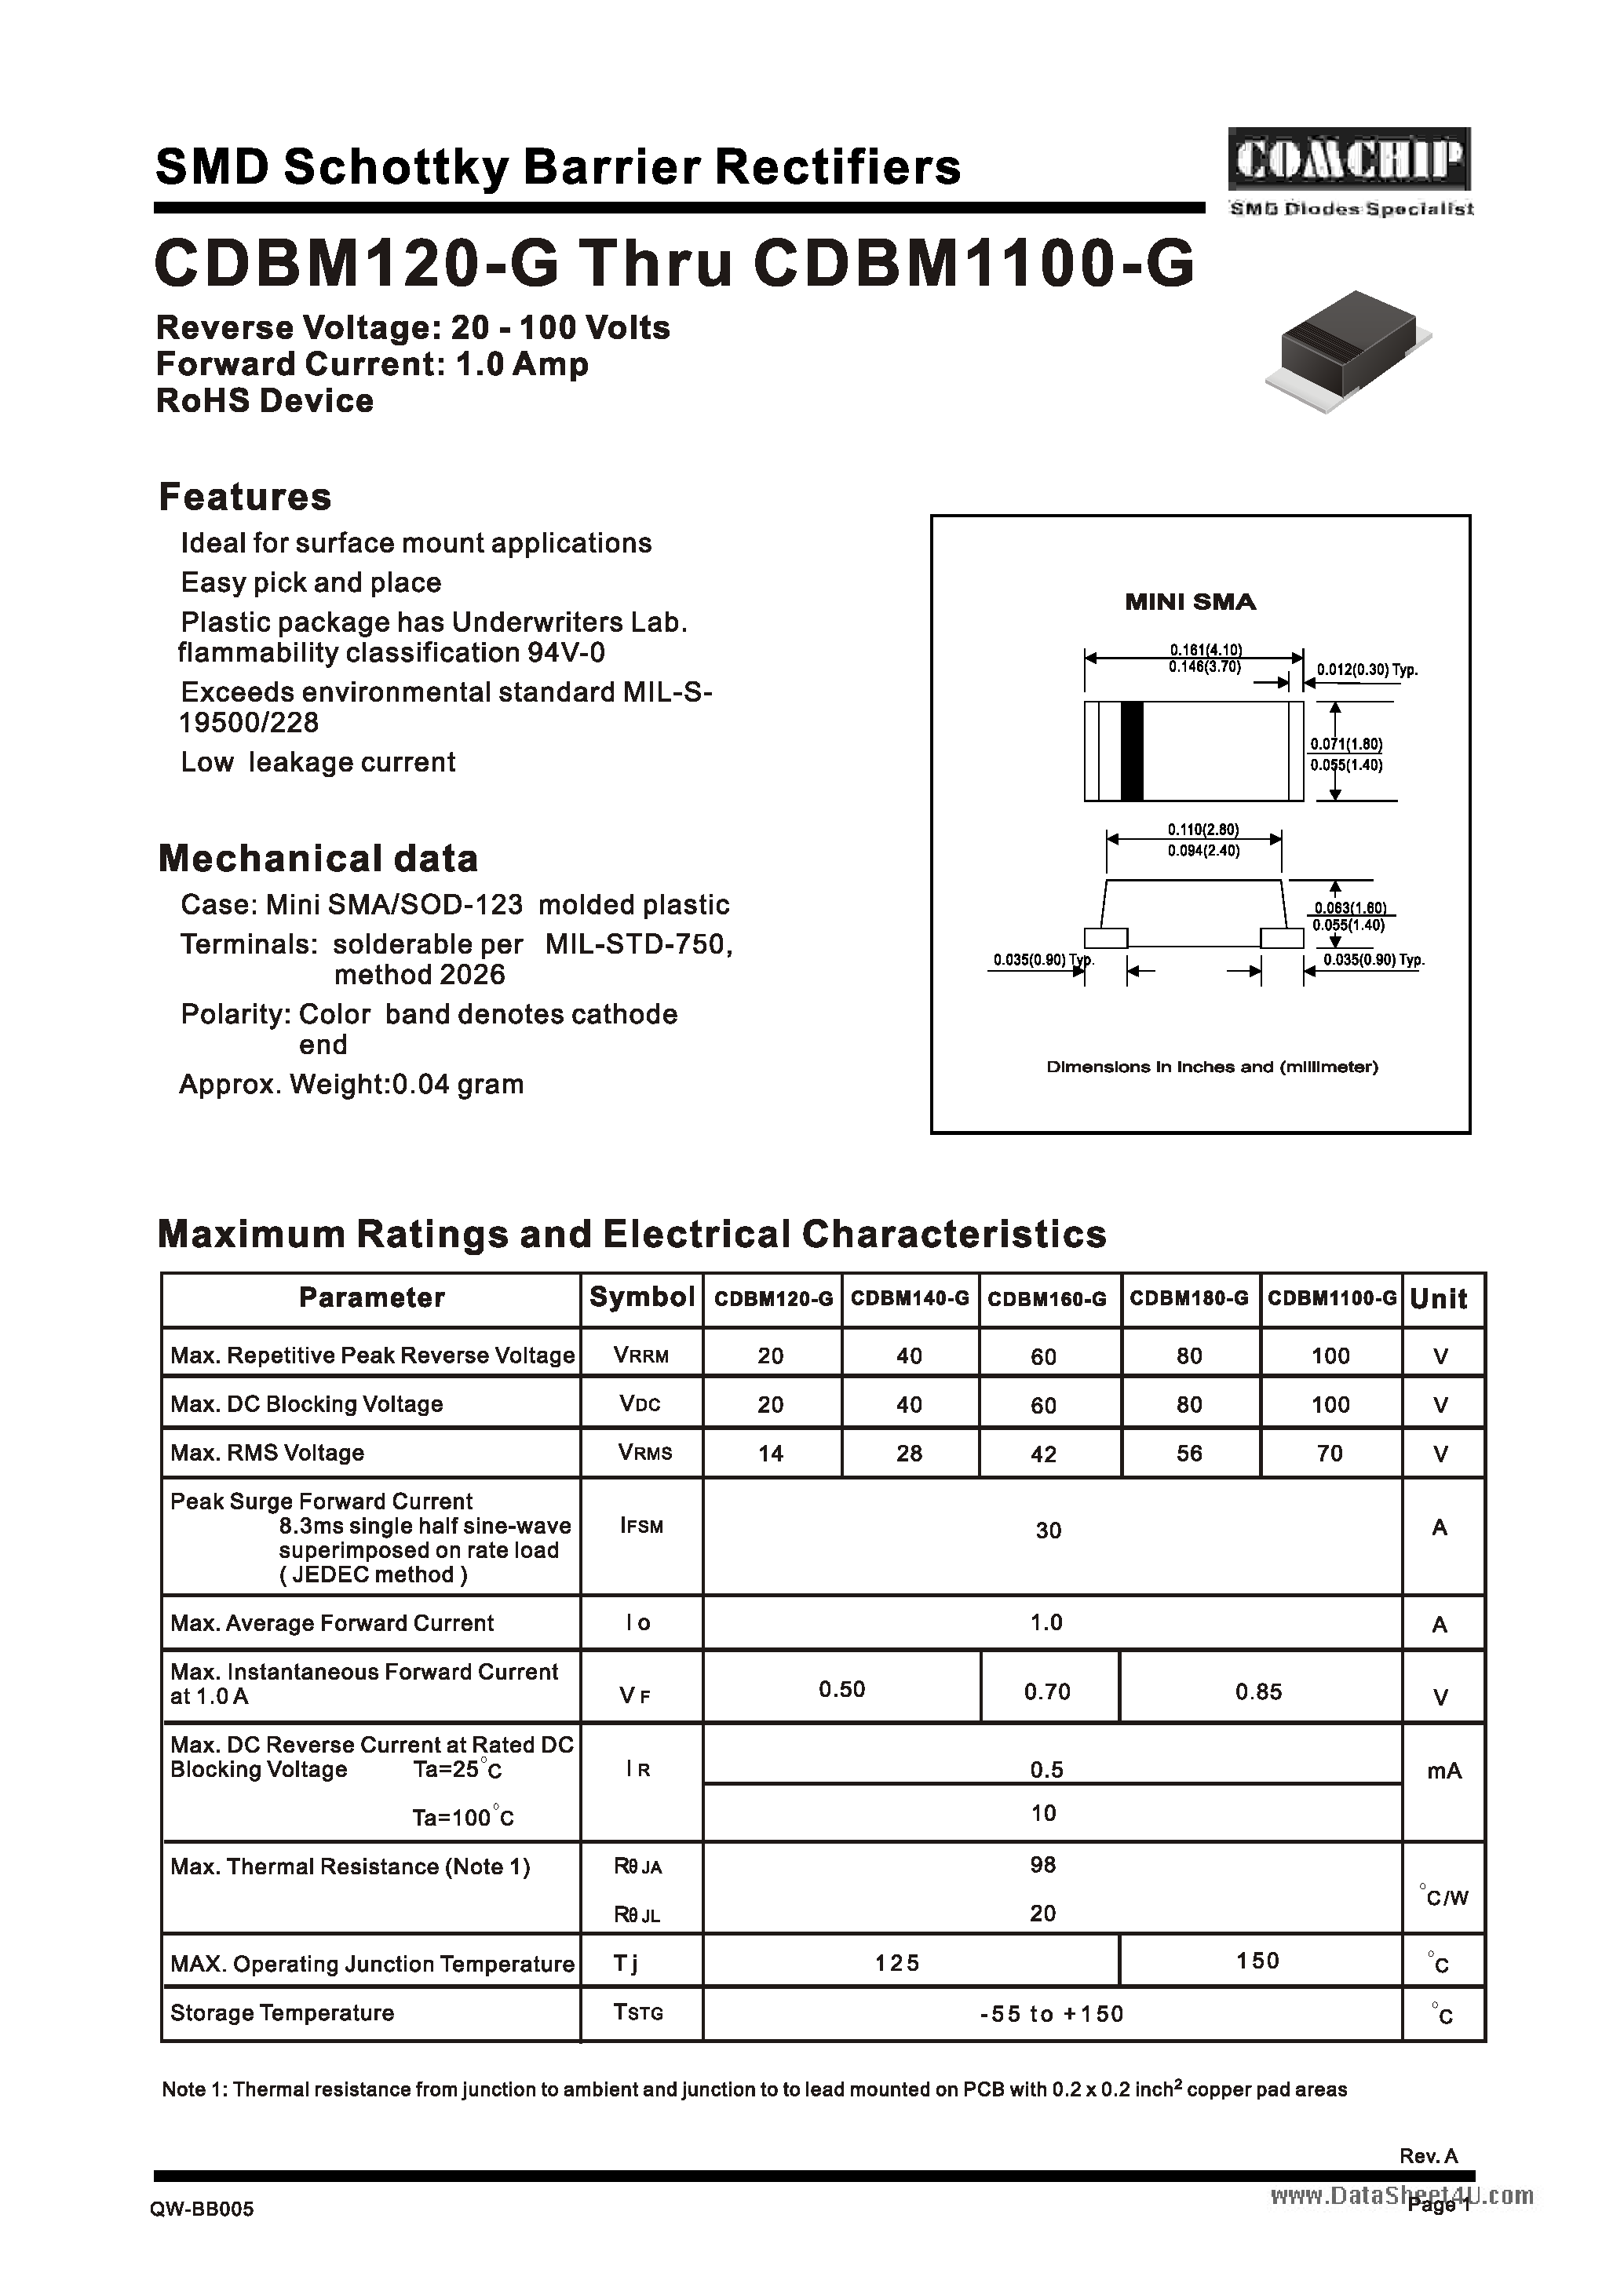 Даташит CDBM1100-G - (CDBM120-G - CDBM1100-G) SMD Schottky Barrier Rectifiers страница 1